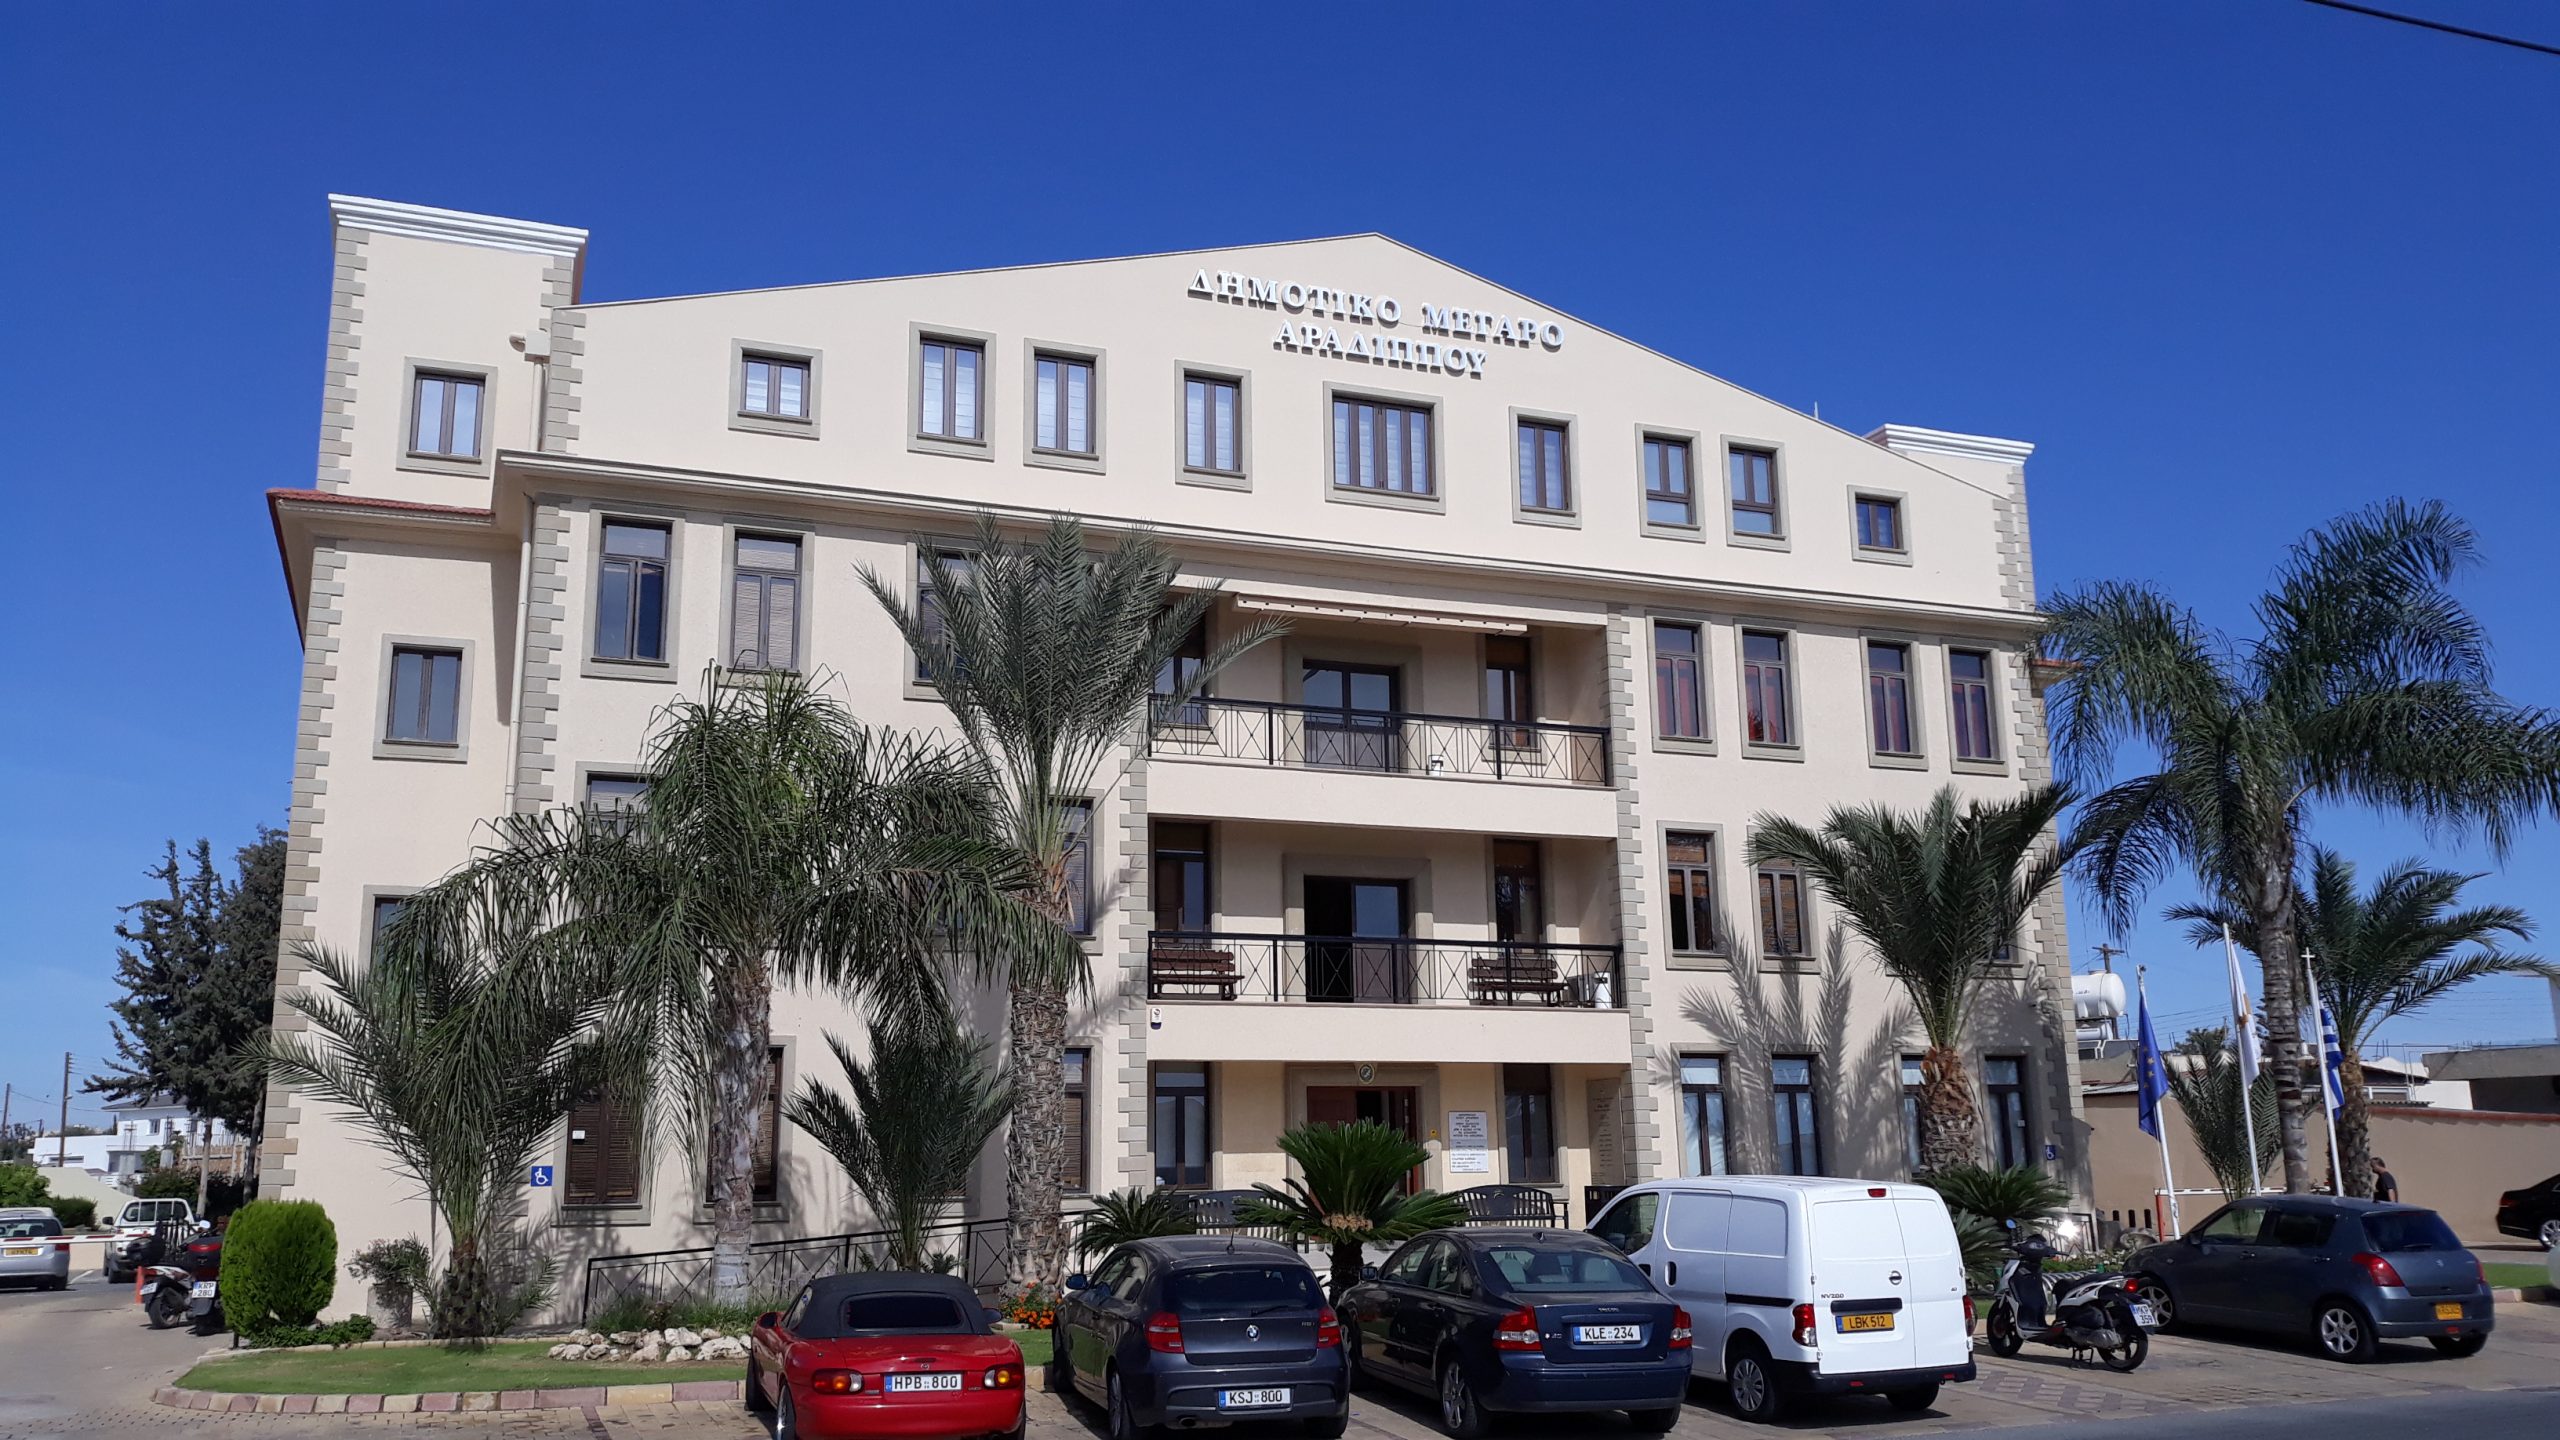 Υποτροφία για διδακτορική διατριβή προκηρύσσει ο Δήμος Αραδίππου στο Τεχνολογικό Πανεπιστήμιο Κύπρου